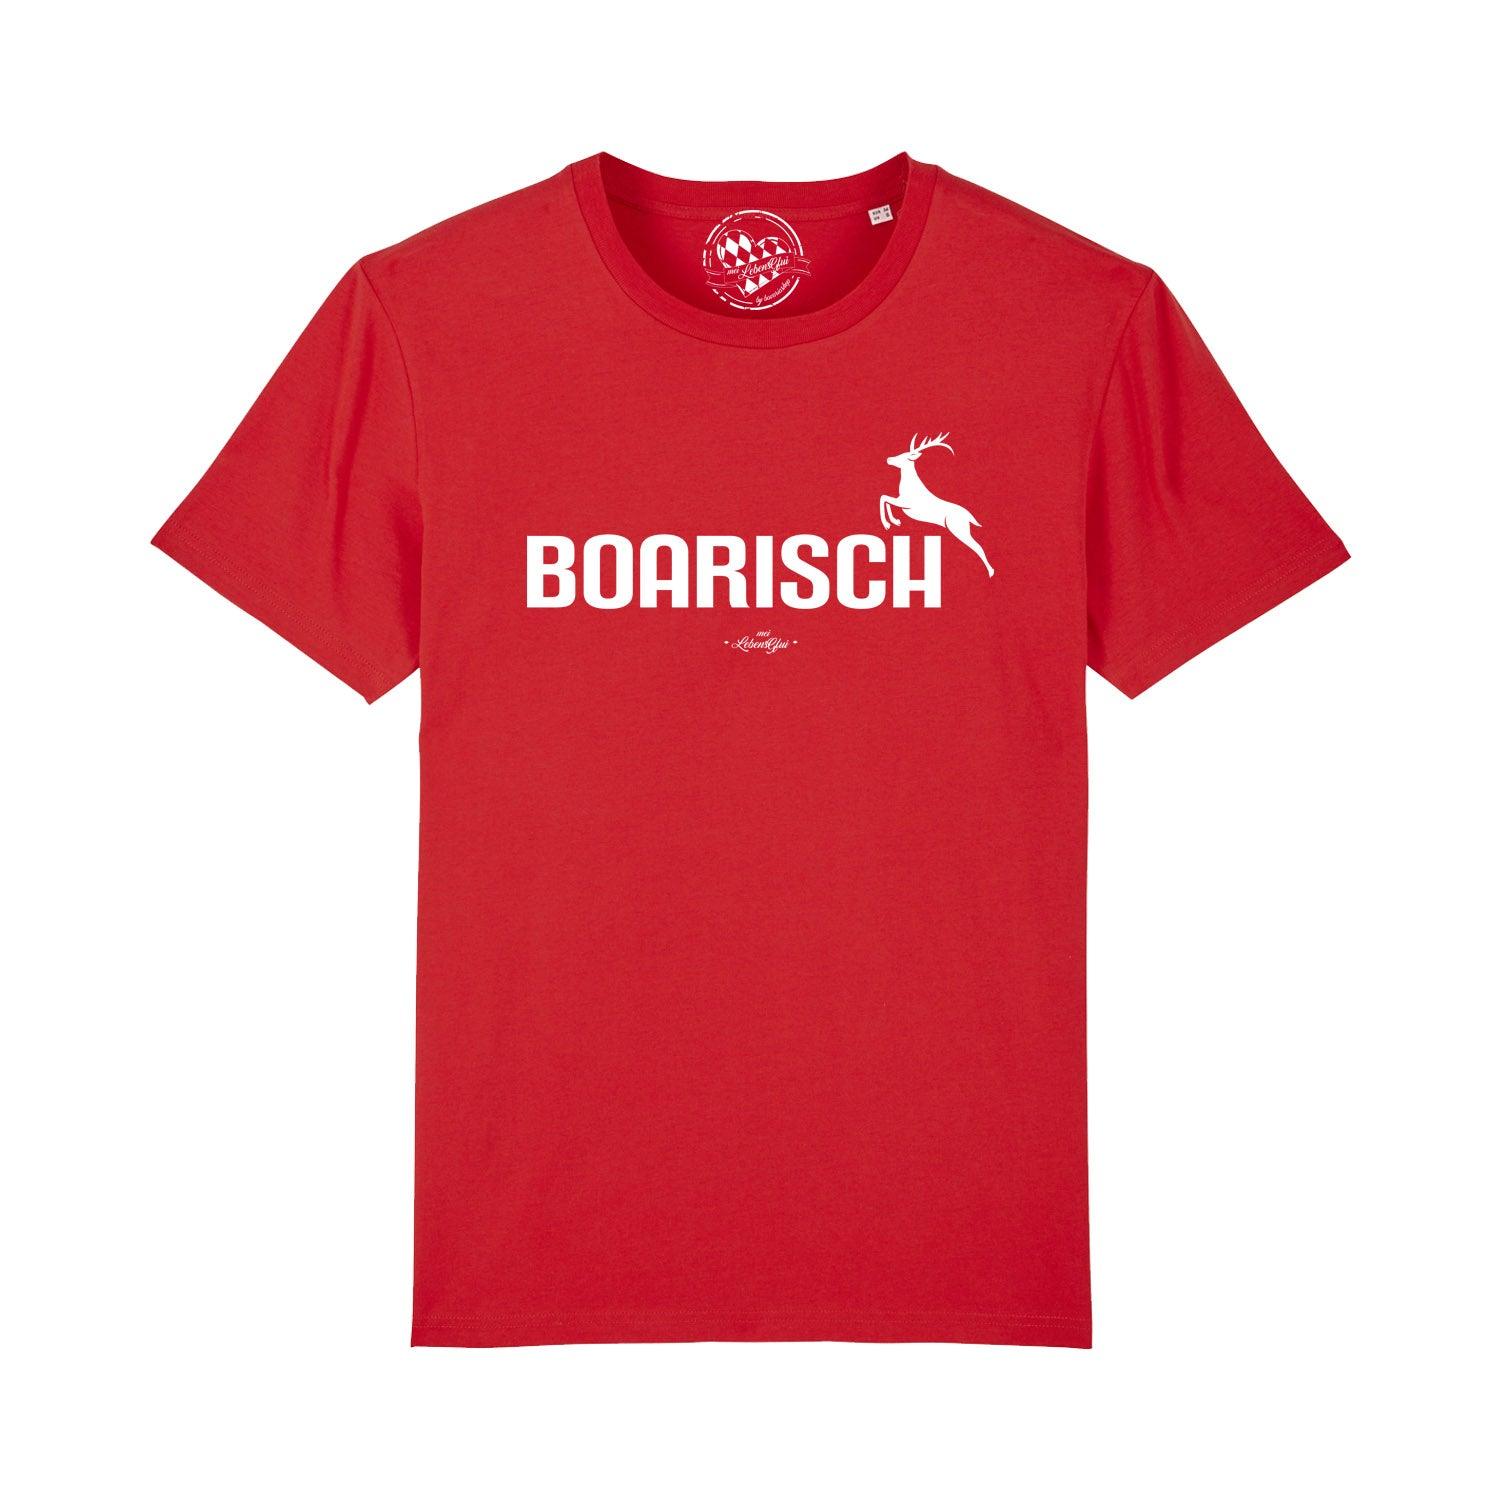 Herren T-Shirt "Boarisch" - bavariashop - mei LebensGfui